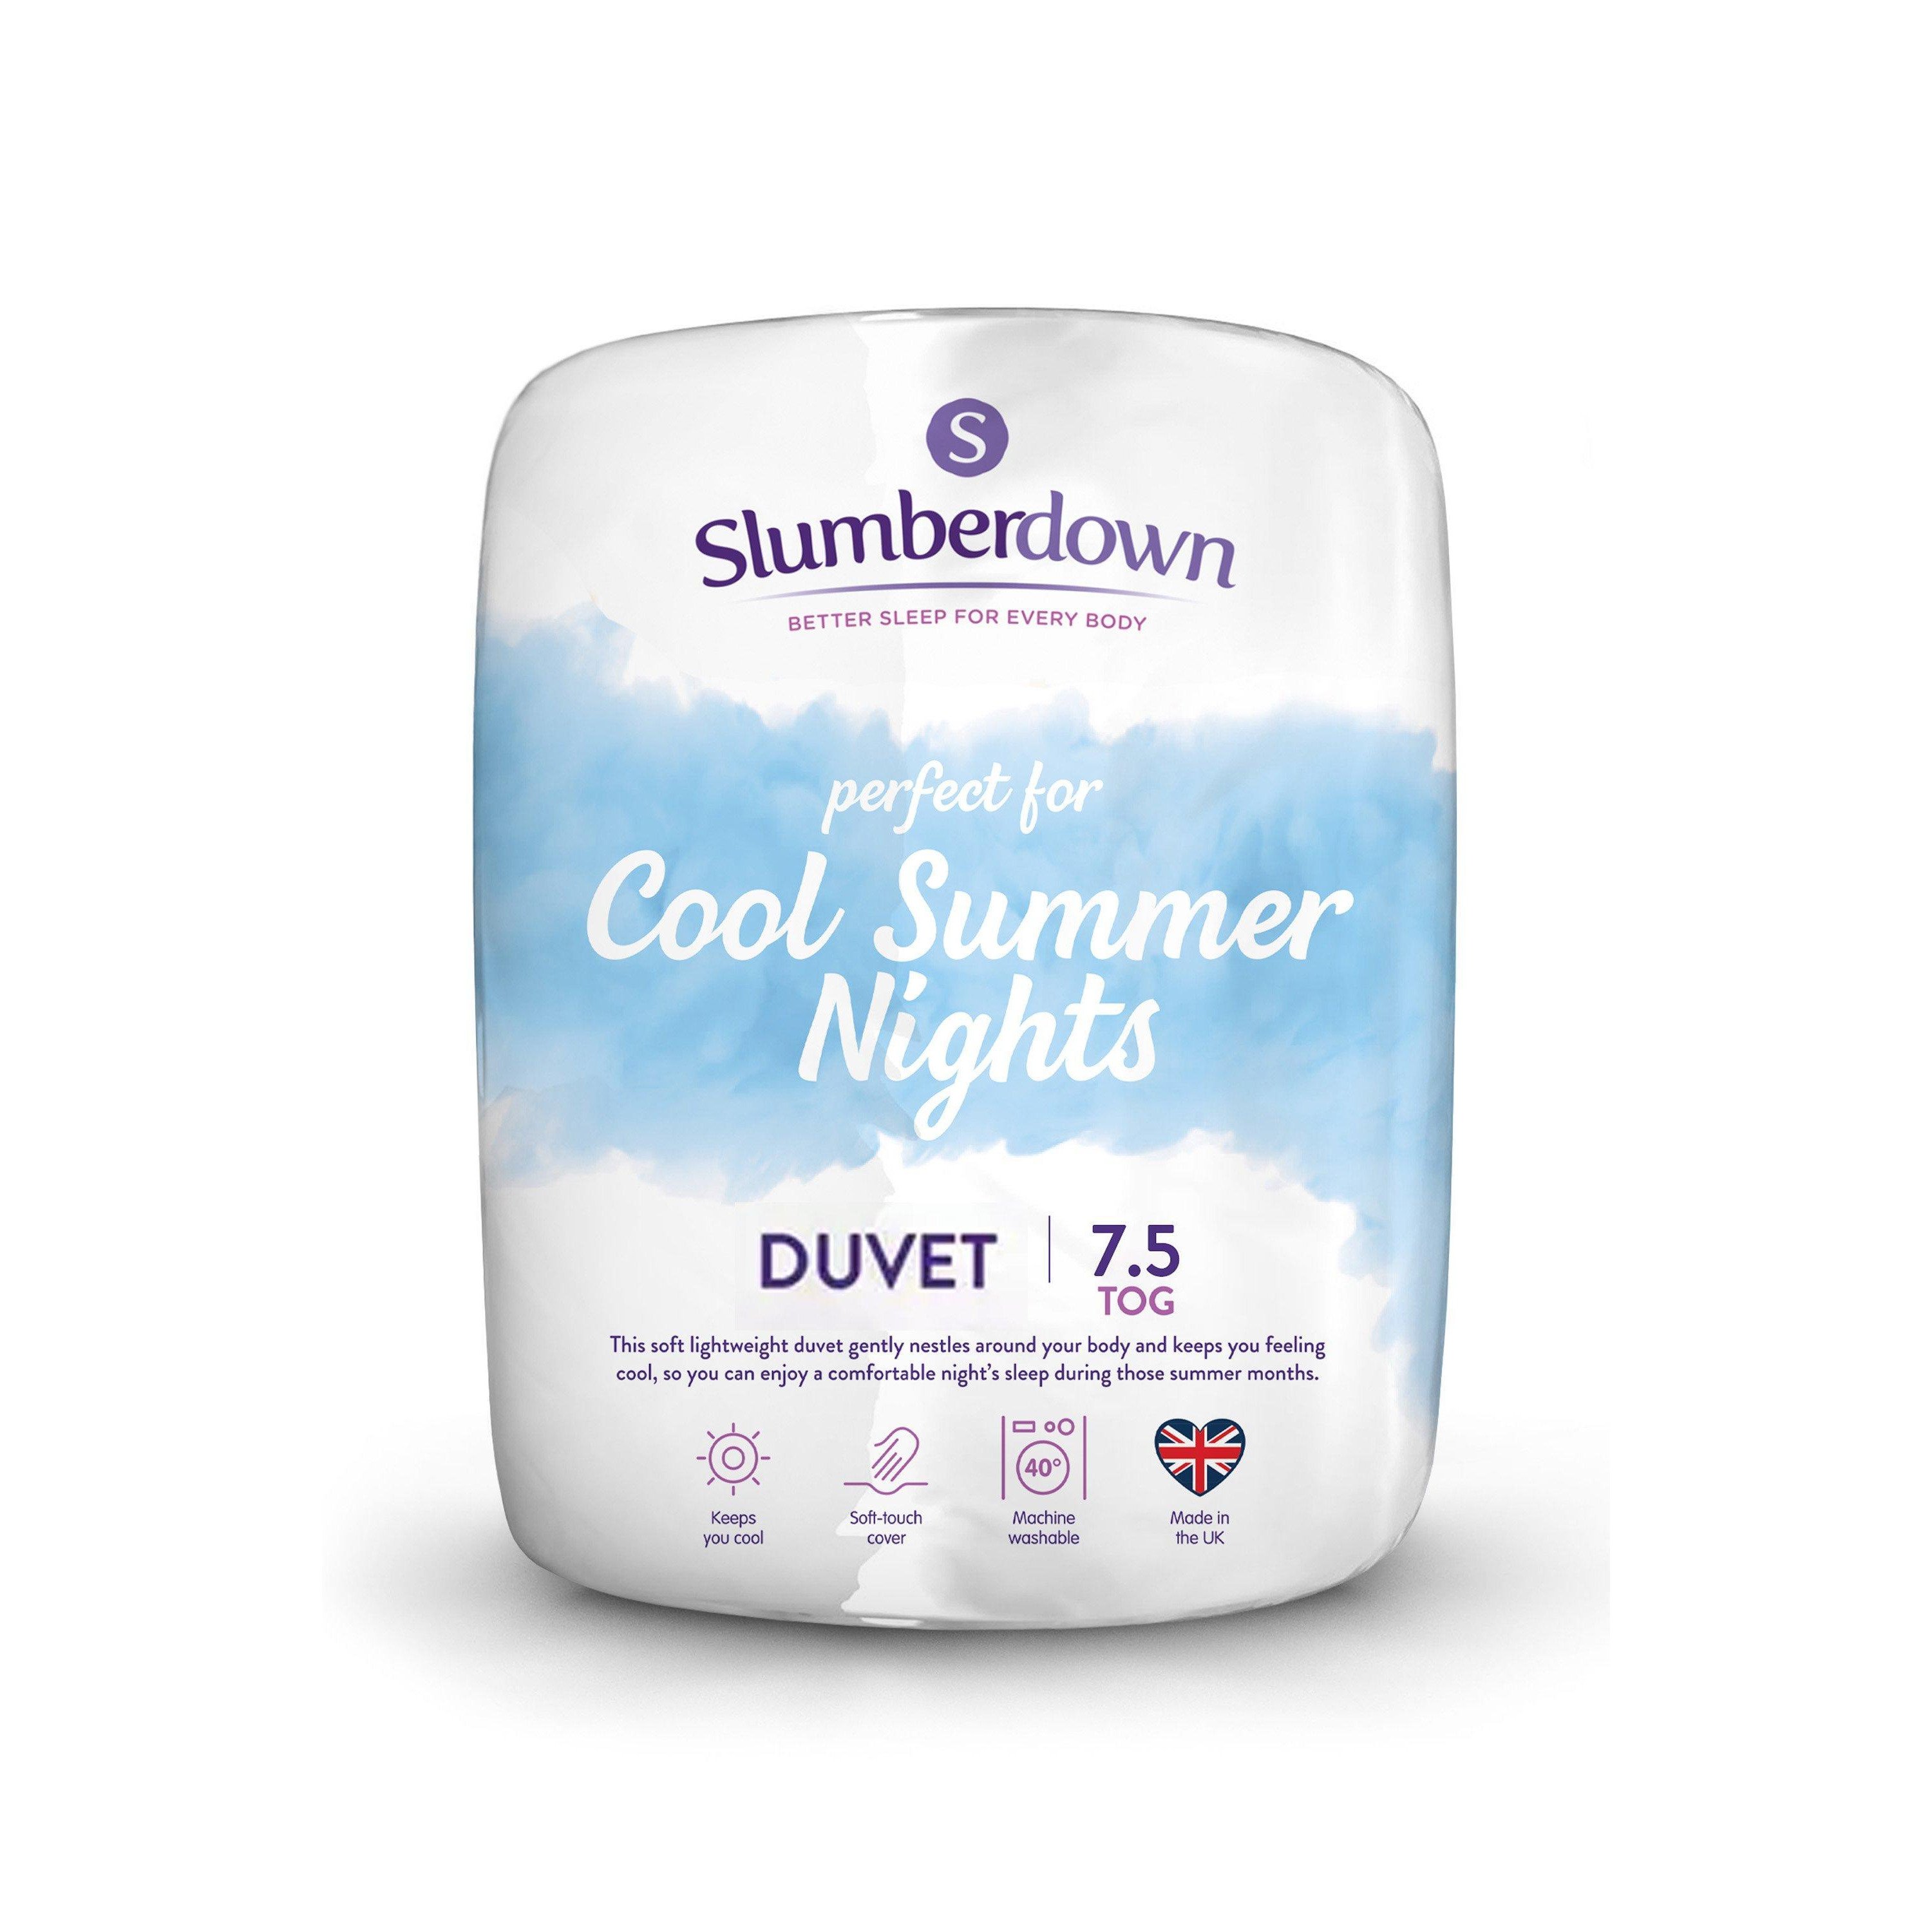 Cool Summer Nights 7.5 Tog Summer Duvet - image 1